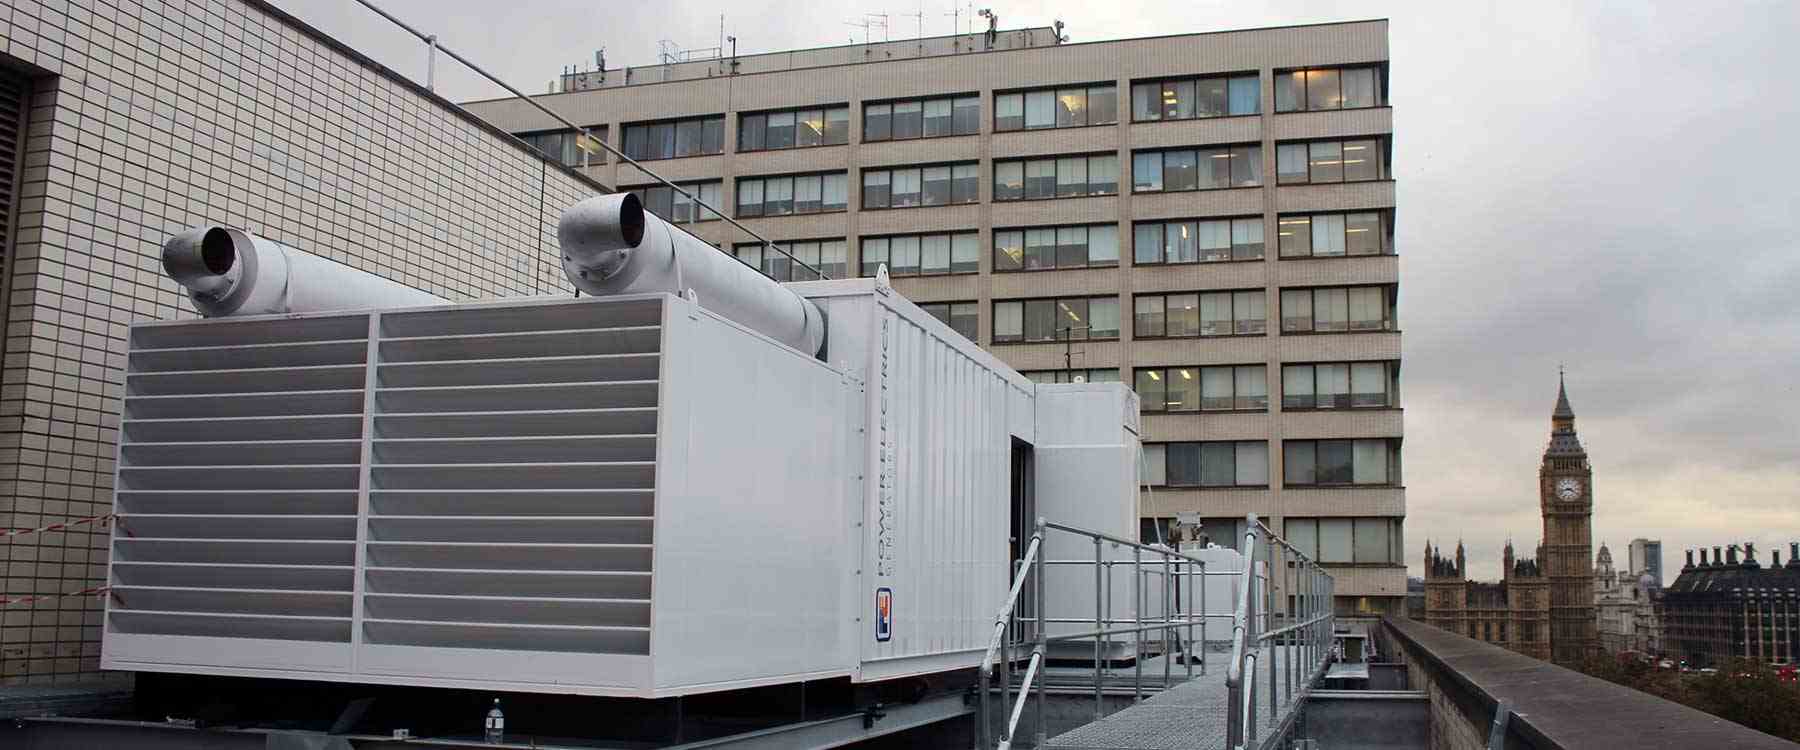 2 x multi-megawatt generators on rooftop in London